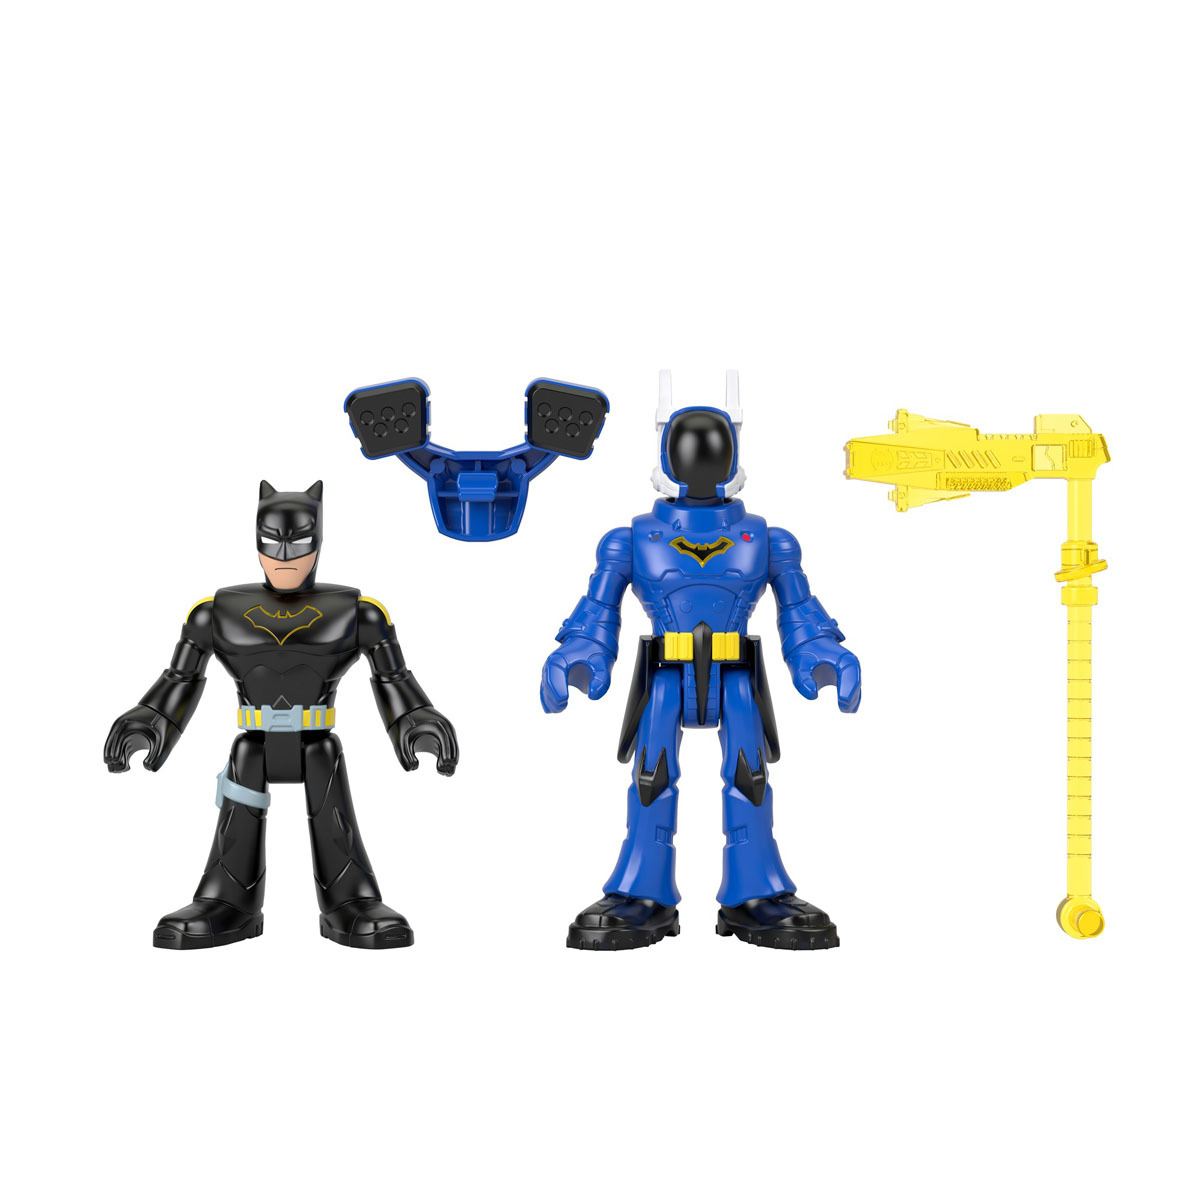 Imaginext DC Super Friends - Batman & Rookie Figures | The Entertainer